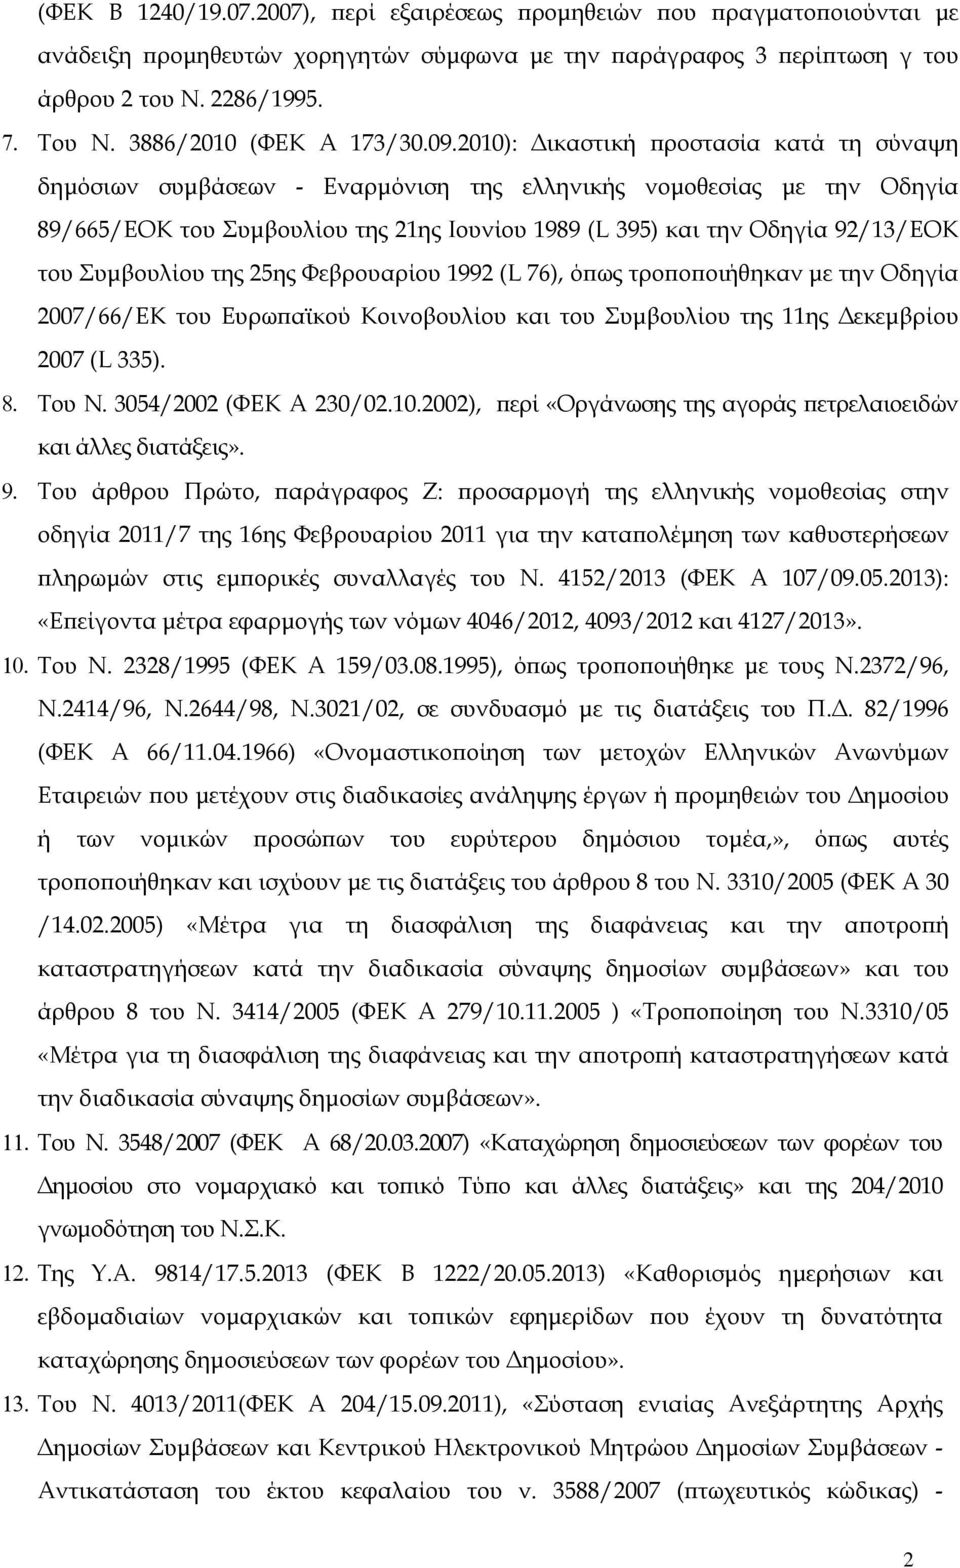 2010): ικαστική ροστασία κατά τη σύναψη δηµόσιων συµβάσεων - Εναρµόνιση της ελληνικής νοµοθεσίας µε την Οδηγία 89/665/ΕΟΚ του Συµβουλίου της 21ης Ιουνίου 1989 (L 395) και την Οδηγία 92/13/ΕΟΚ του